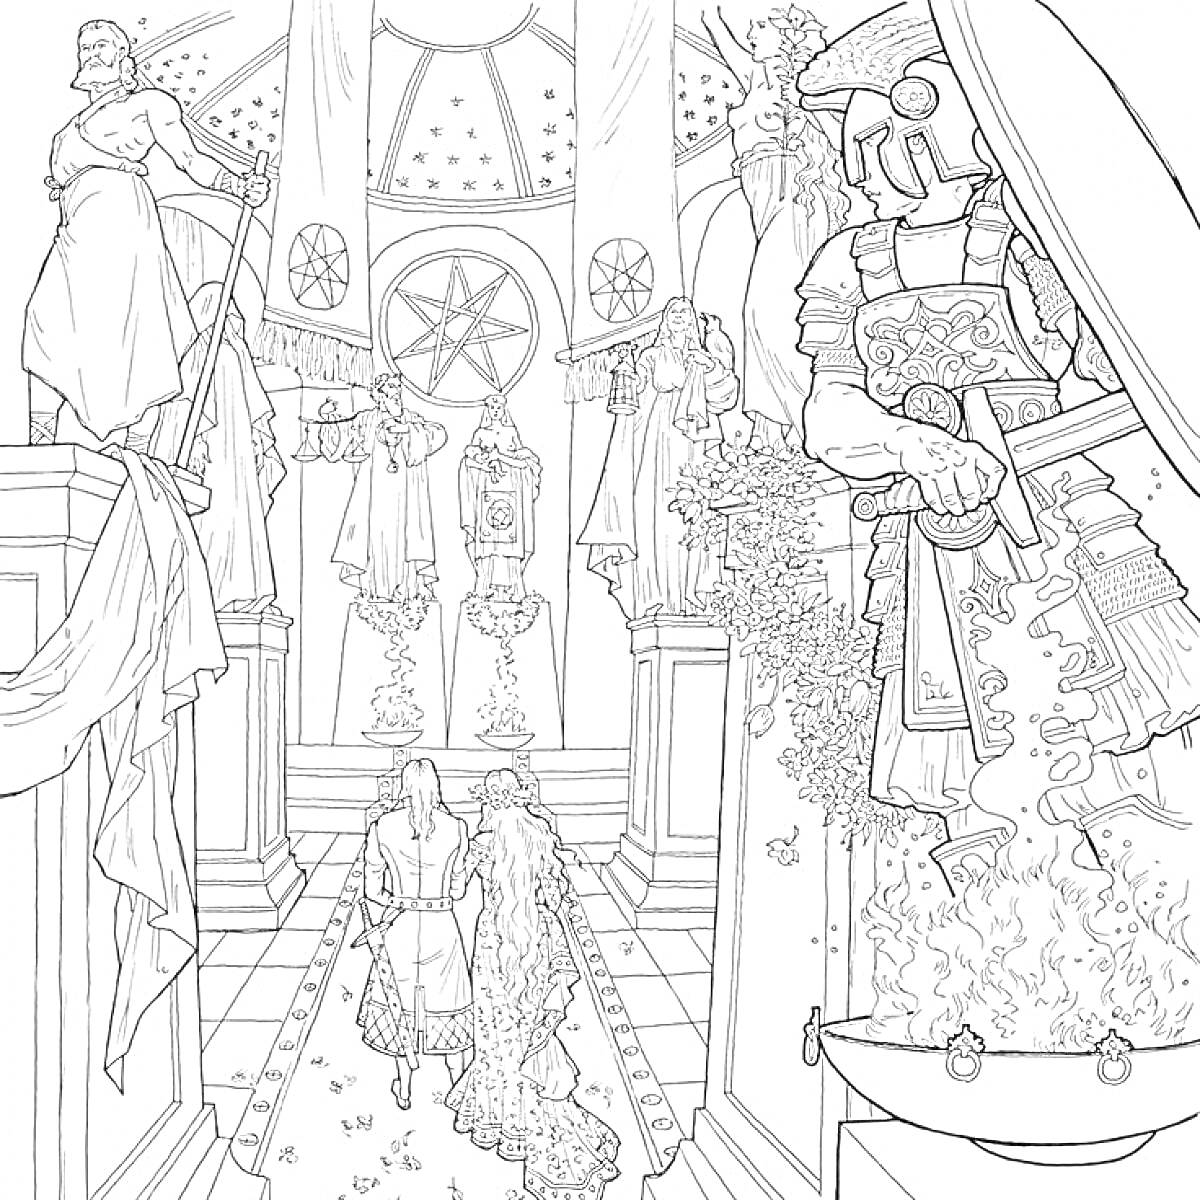 Внутренний интерьер с религиозной символикой, персонажи входят в зал с лавровыми листьями, стражник с правой стороны, разнообразные статуи и декорации на стенах